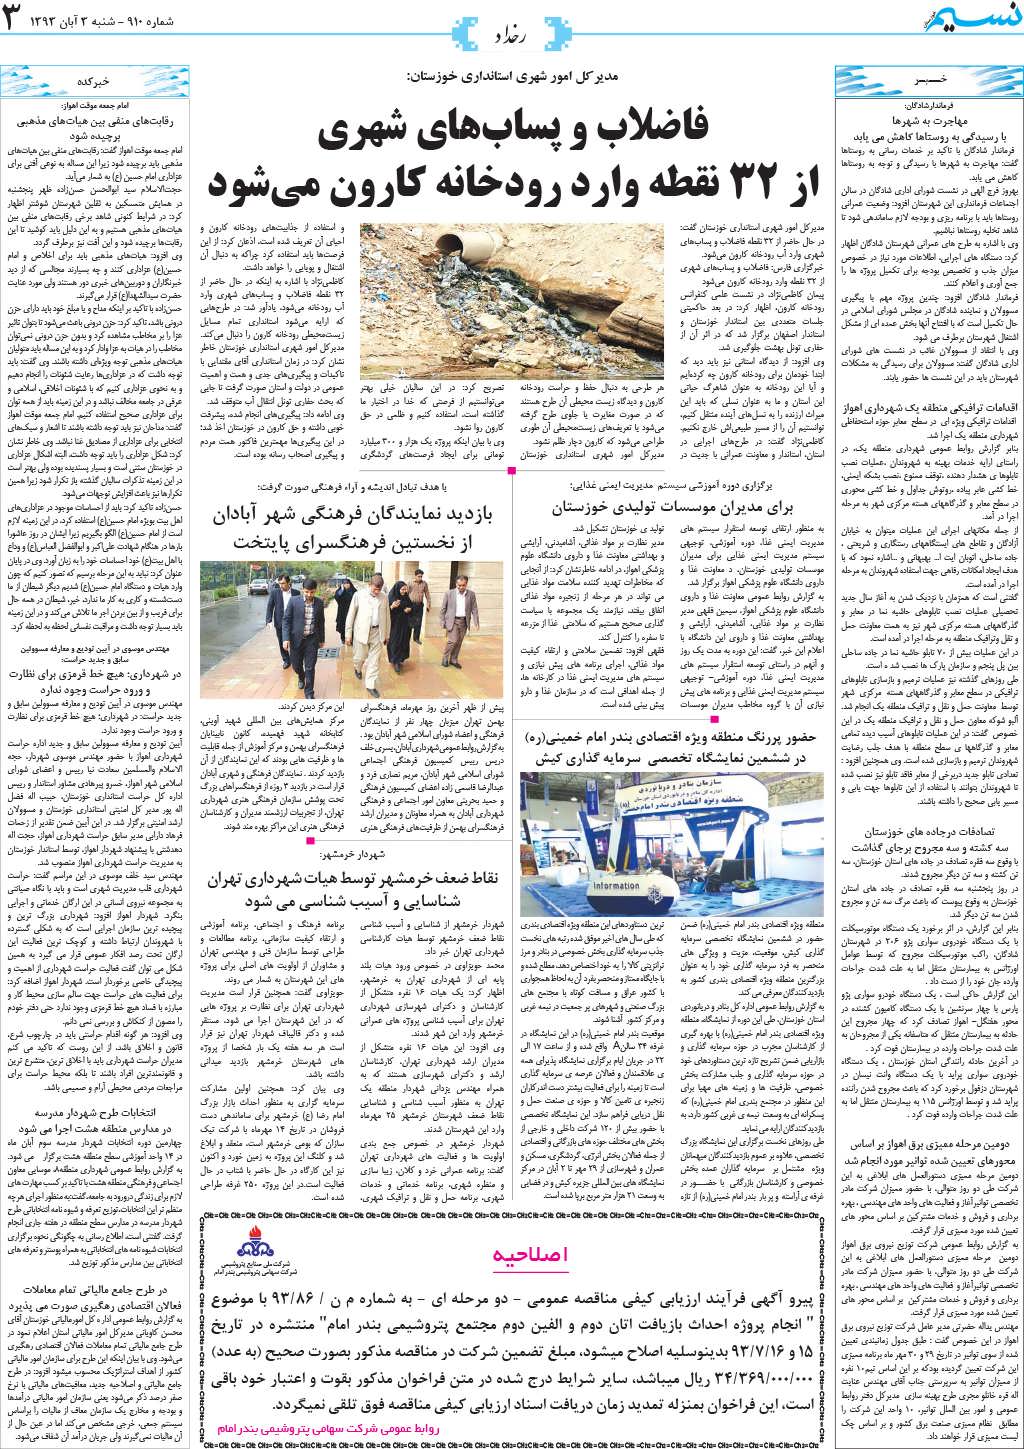 صفحه رخداد روزنامه نسیم شماره 910